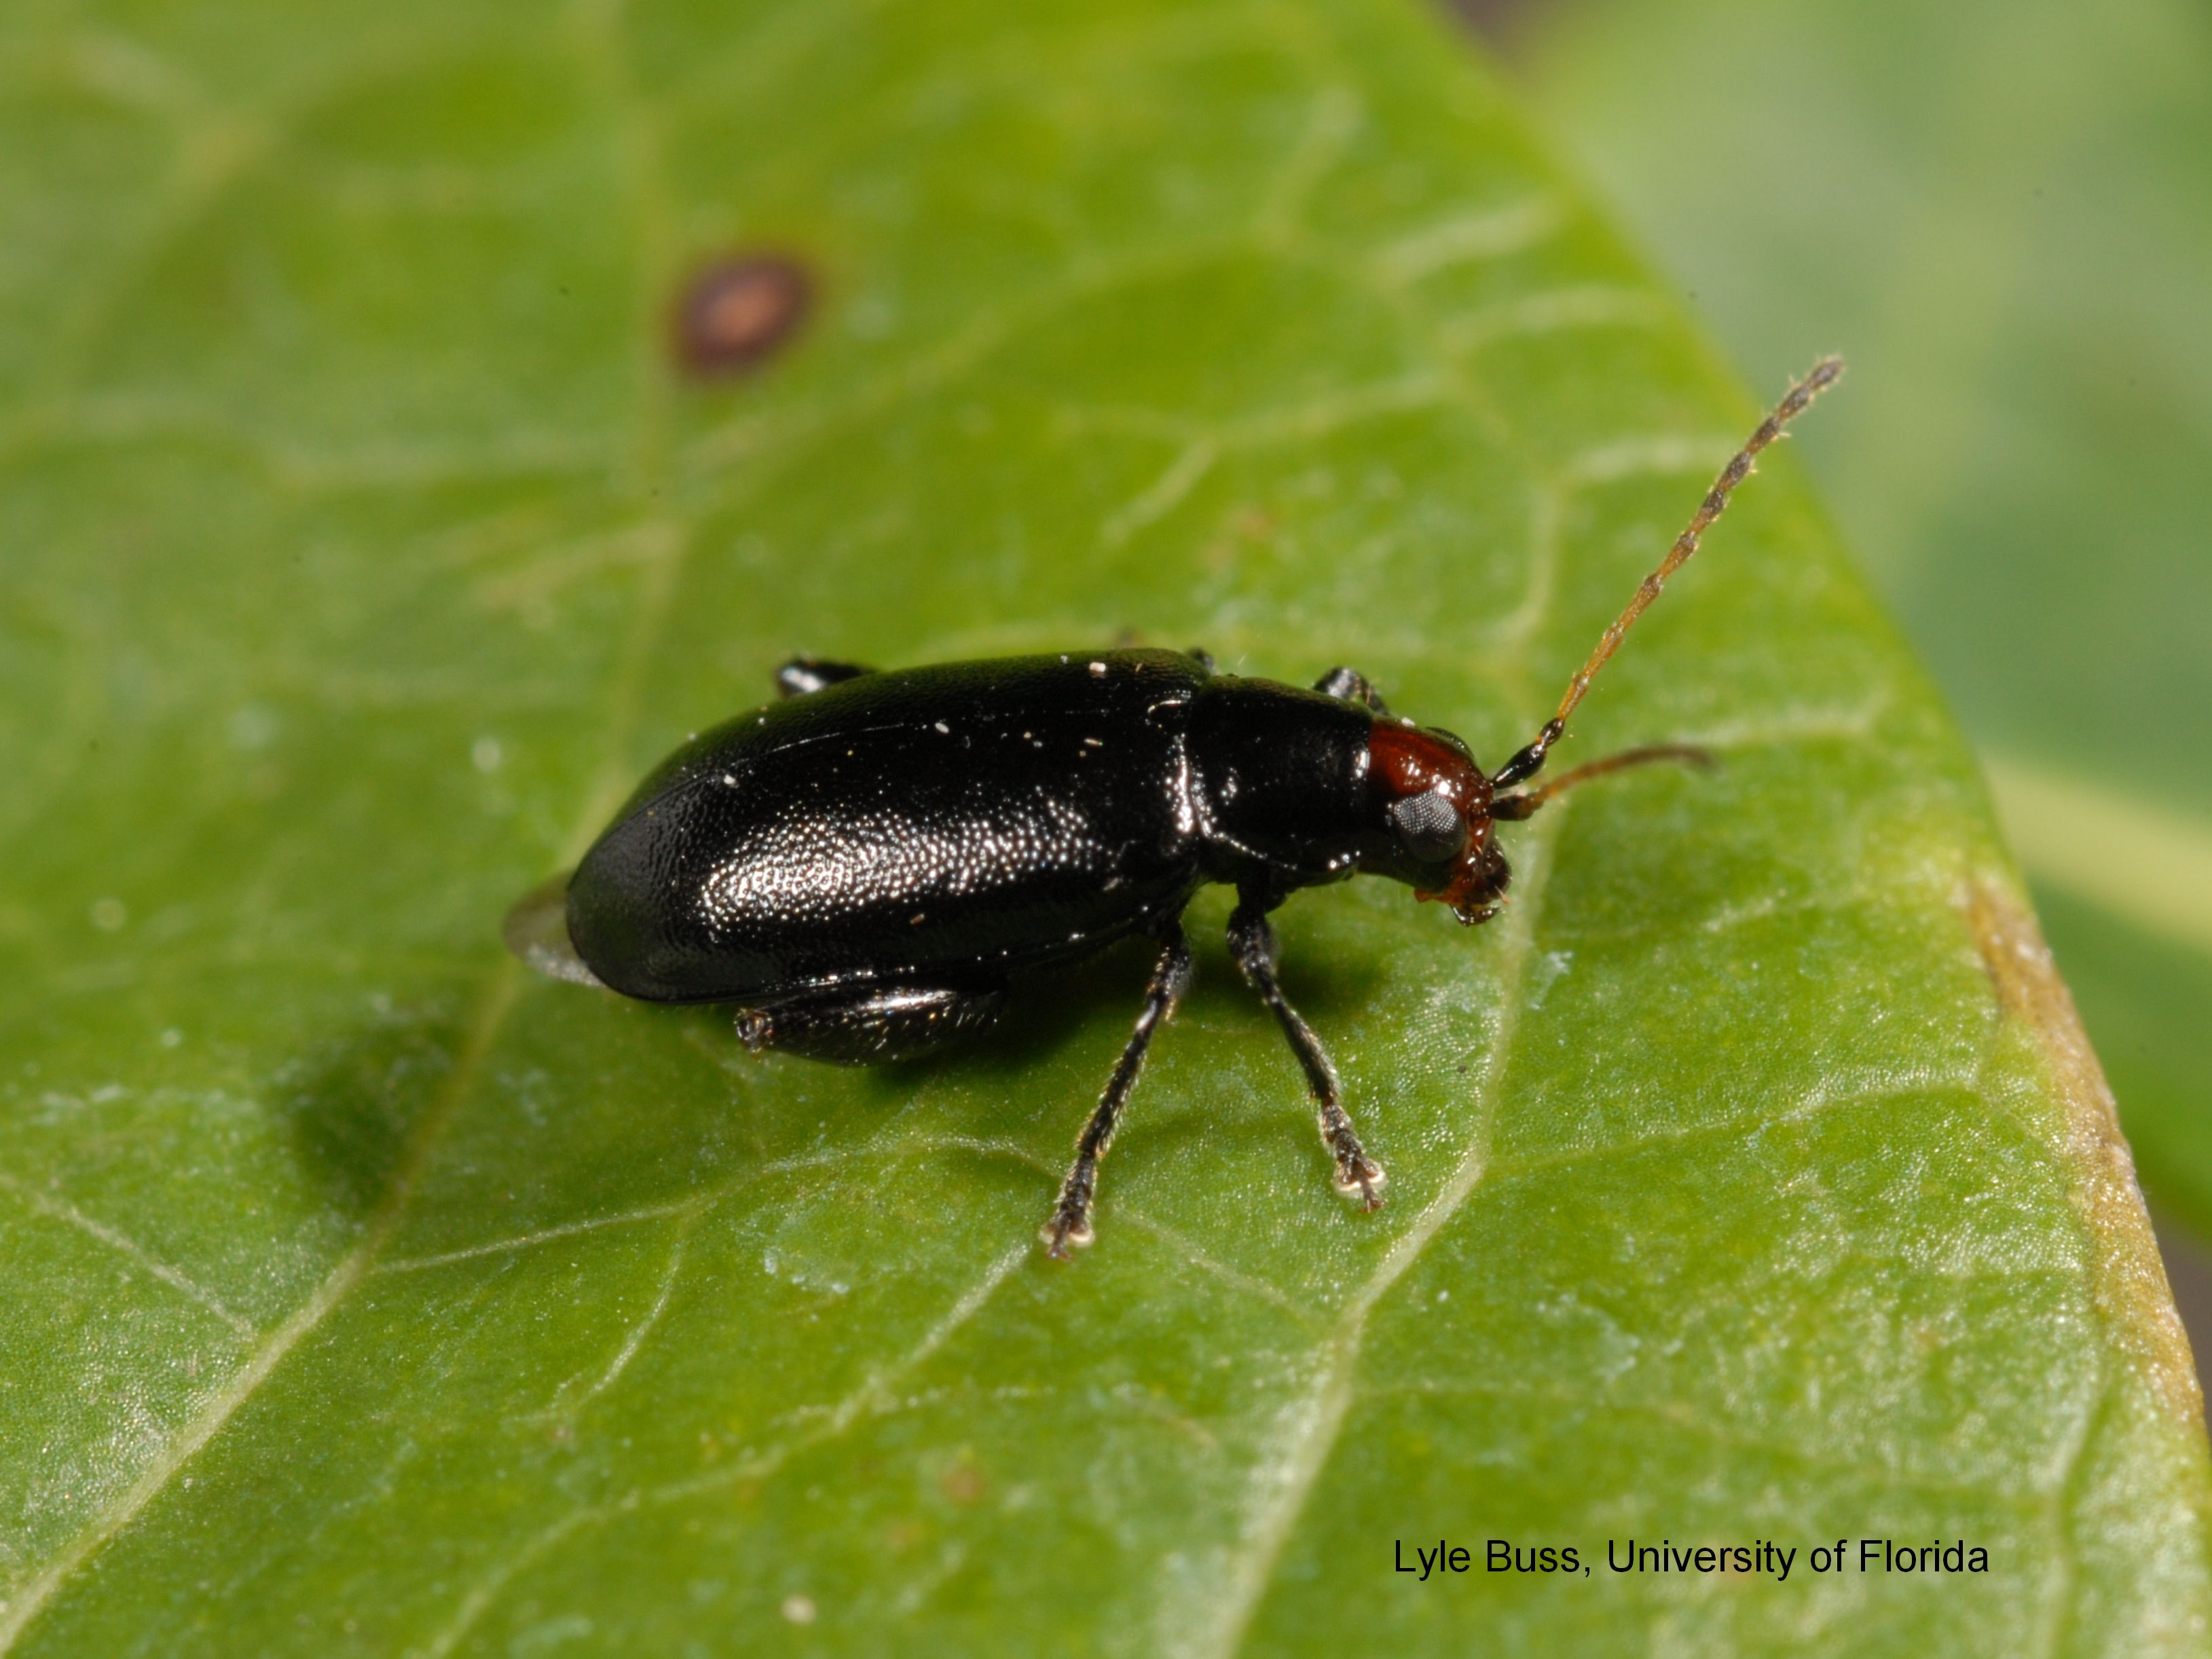 Beetle on leaf photo